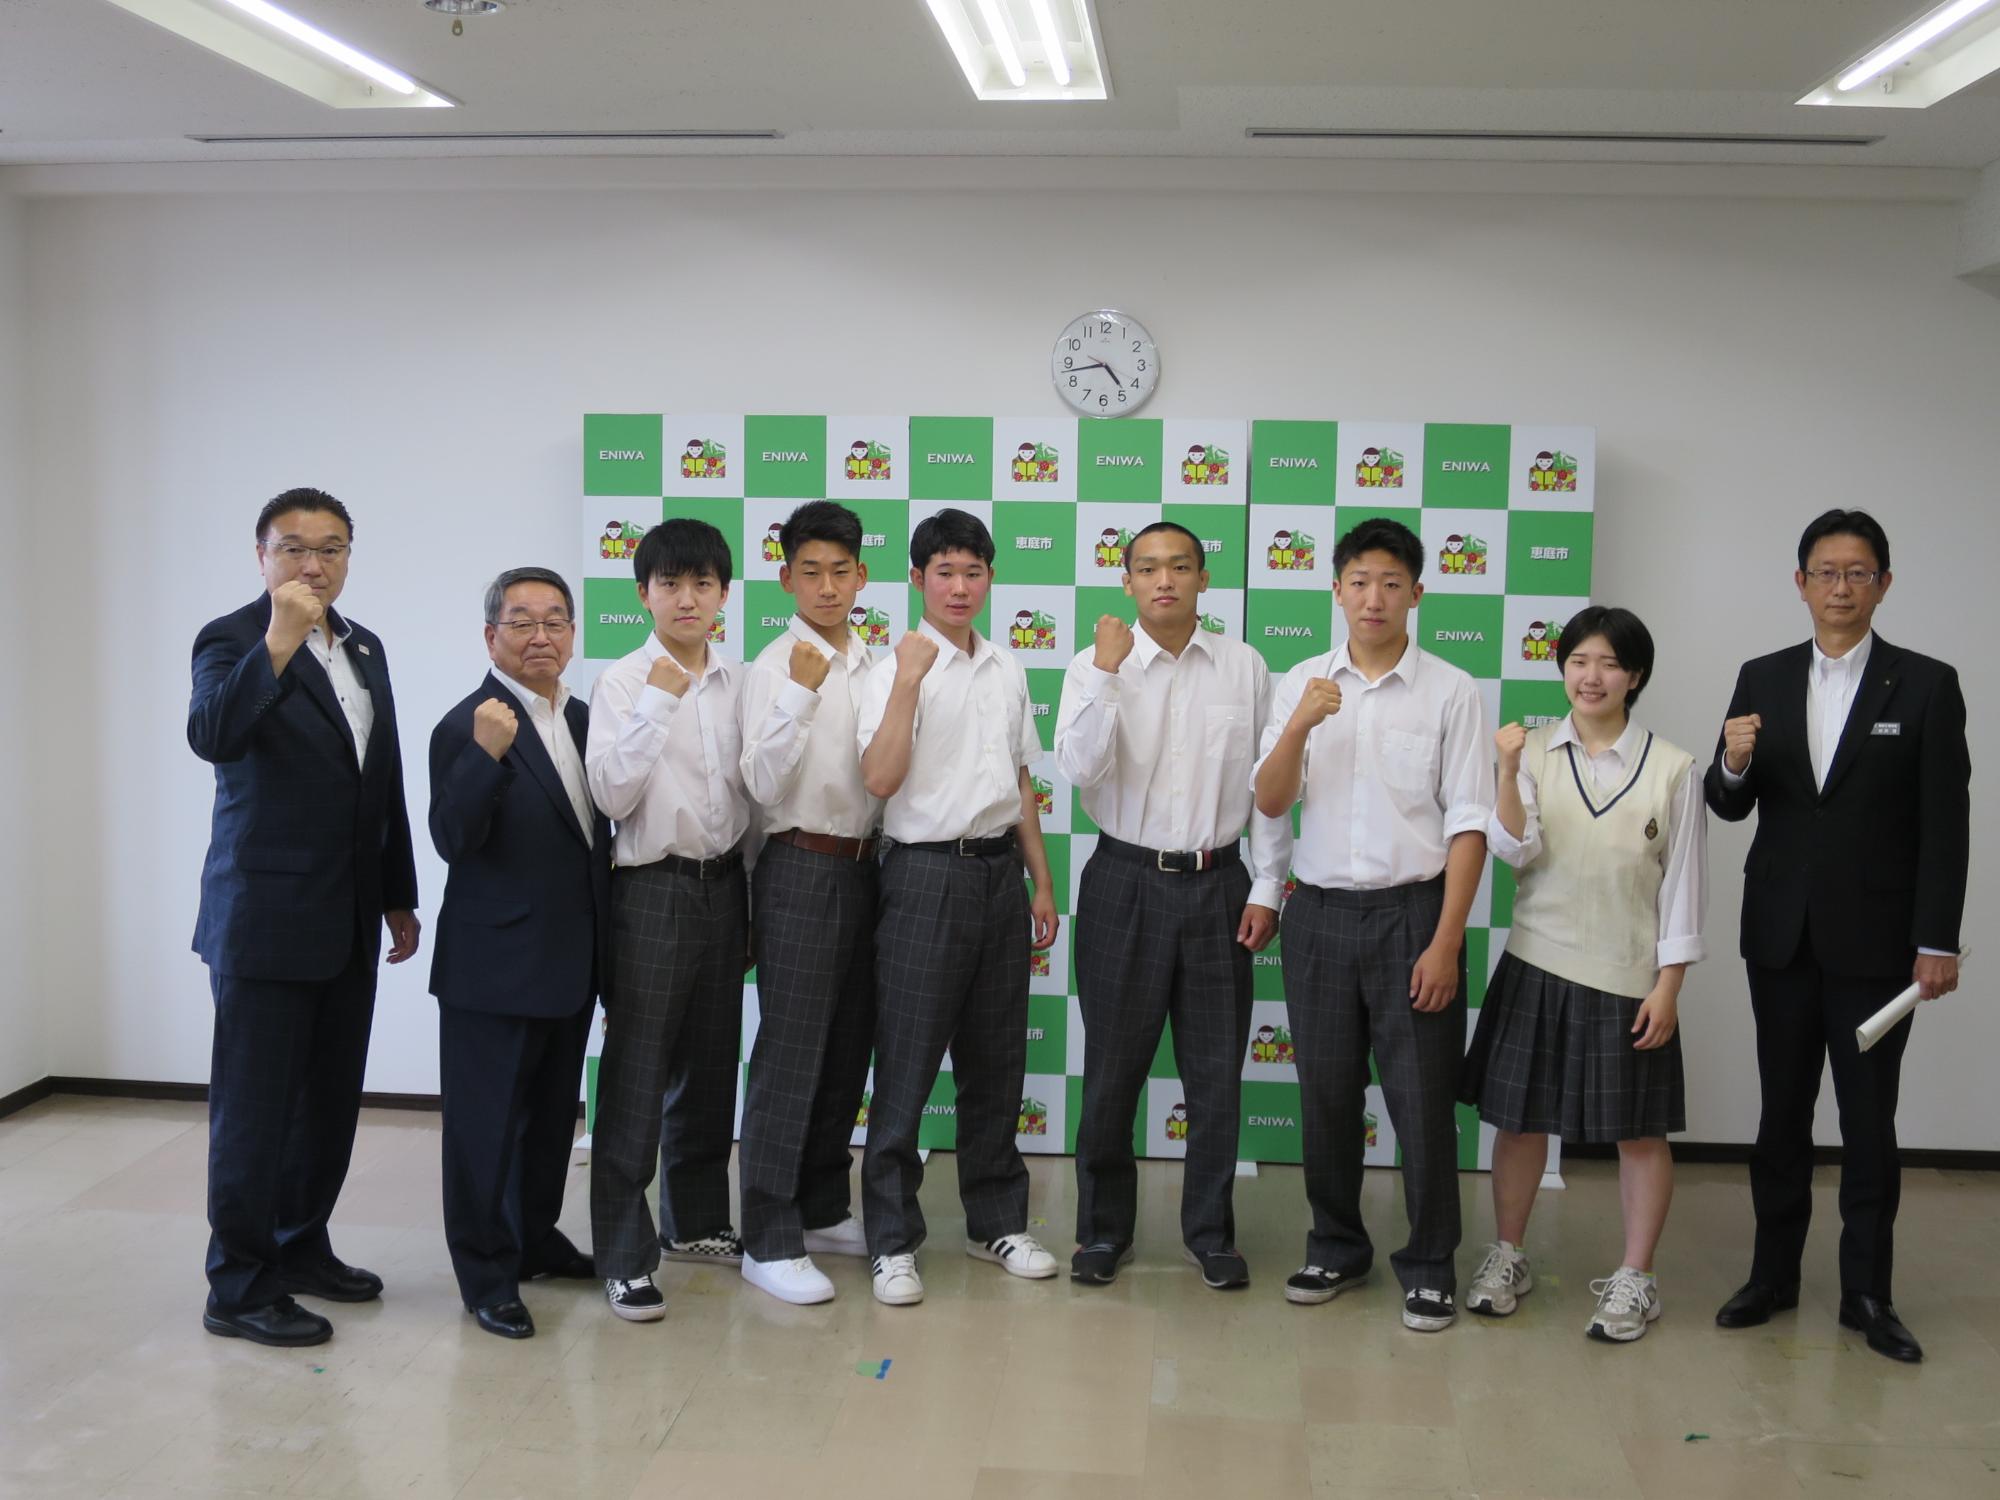 恵庭南高校の生徒と集合写真に写る原田市長